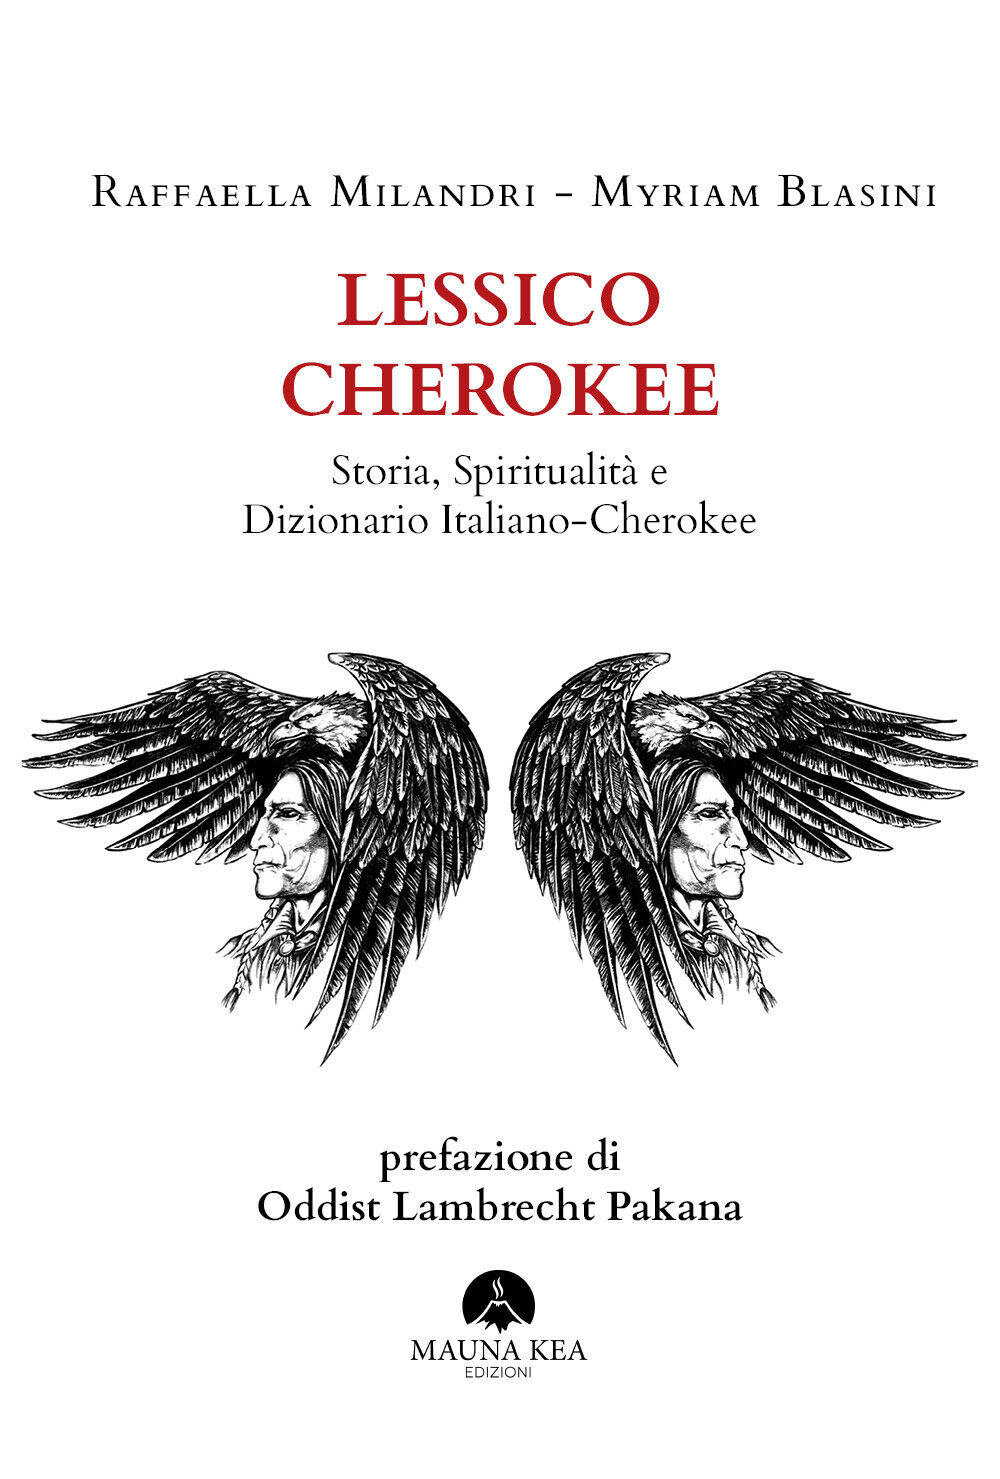 Lessico Cherokee Storia, Spiritualit? e Dizionario Italiano-Cherokee di Raffaell